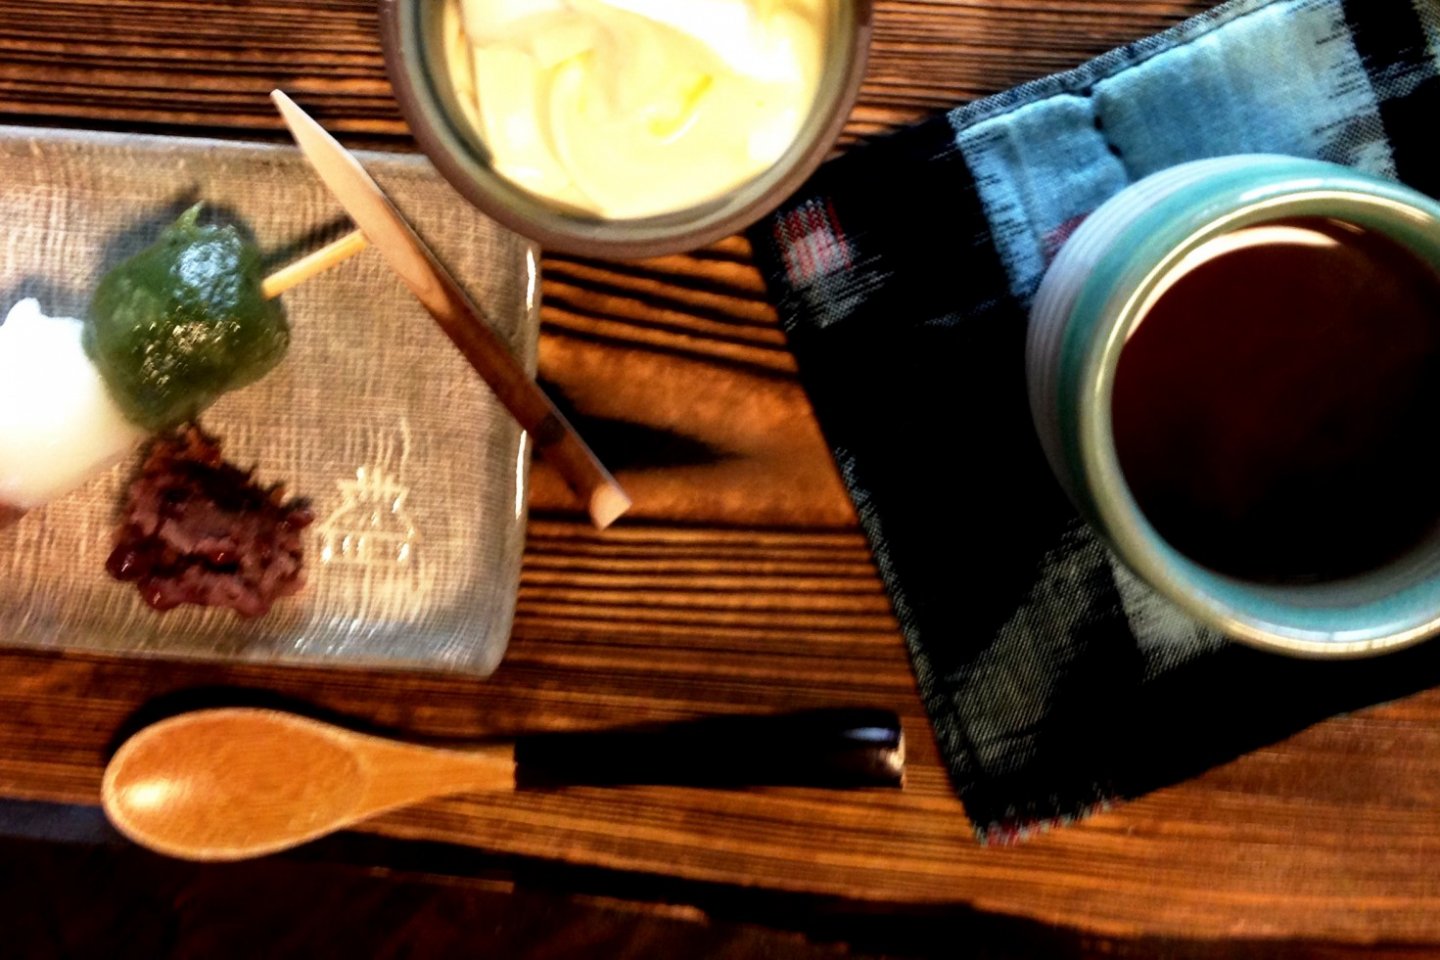 Trois mochi avec de la crème glacée et un kuromame, ou thé noir, dont les graines ont été récoltées localement